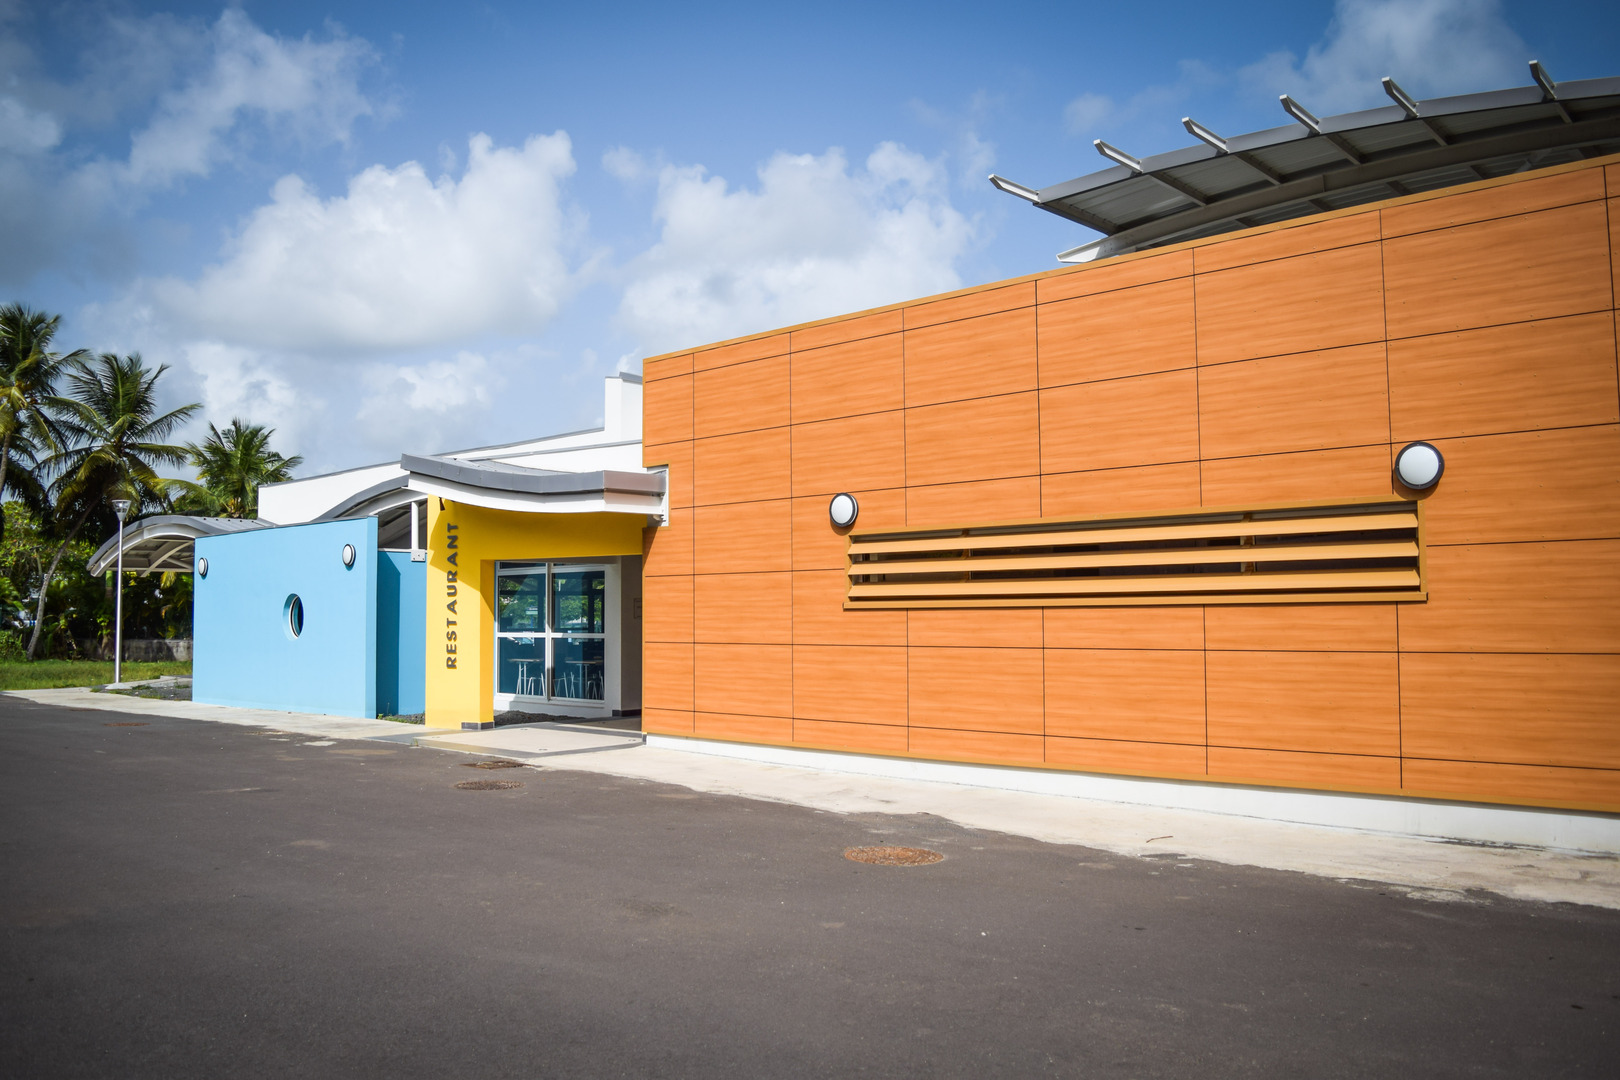     7 établissements scolaires de Guadeloupe obtiennent le label «Internat d’excellence »

